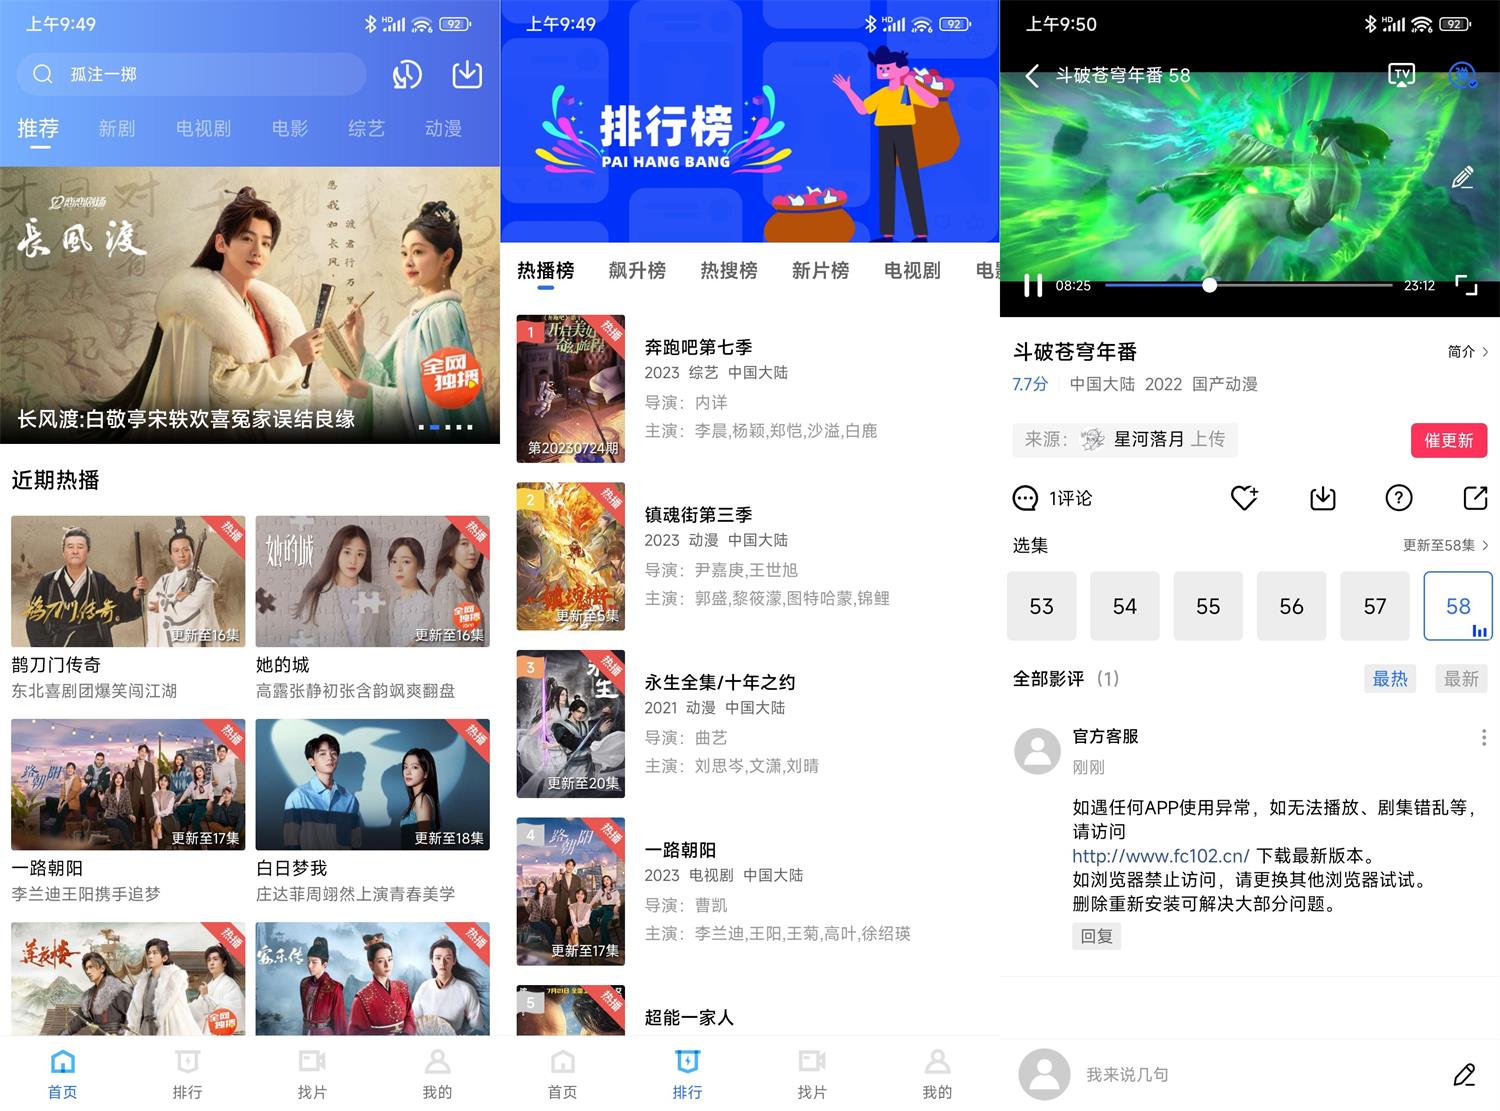 翡翠视频App下载 v3.1.1 绿化版